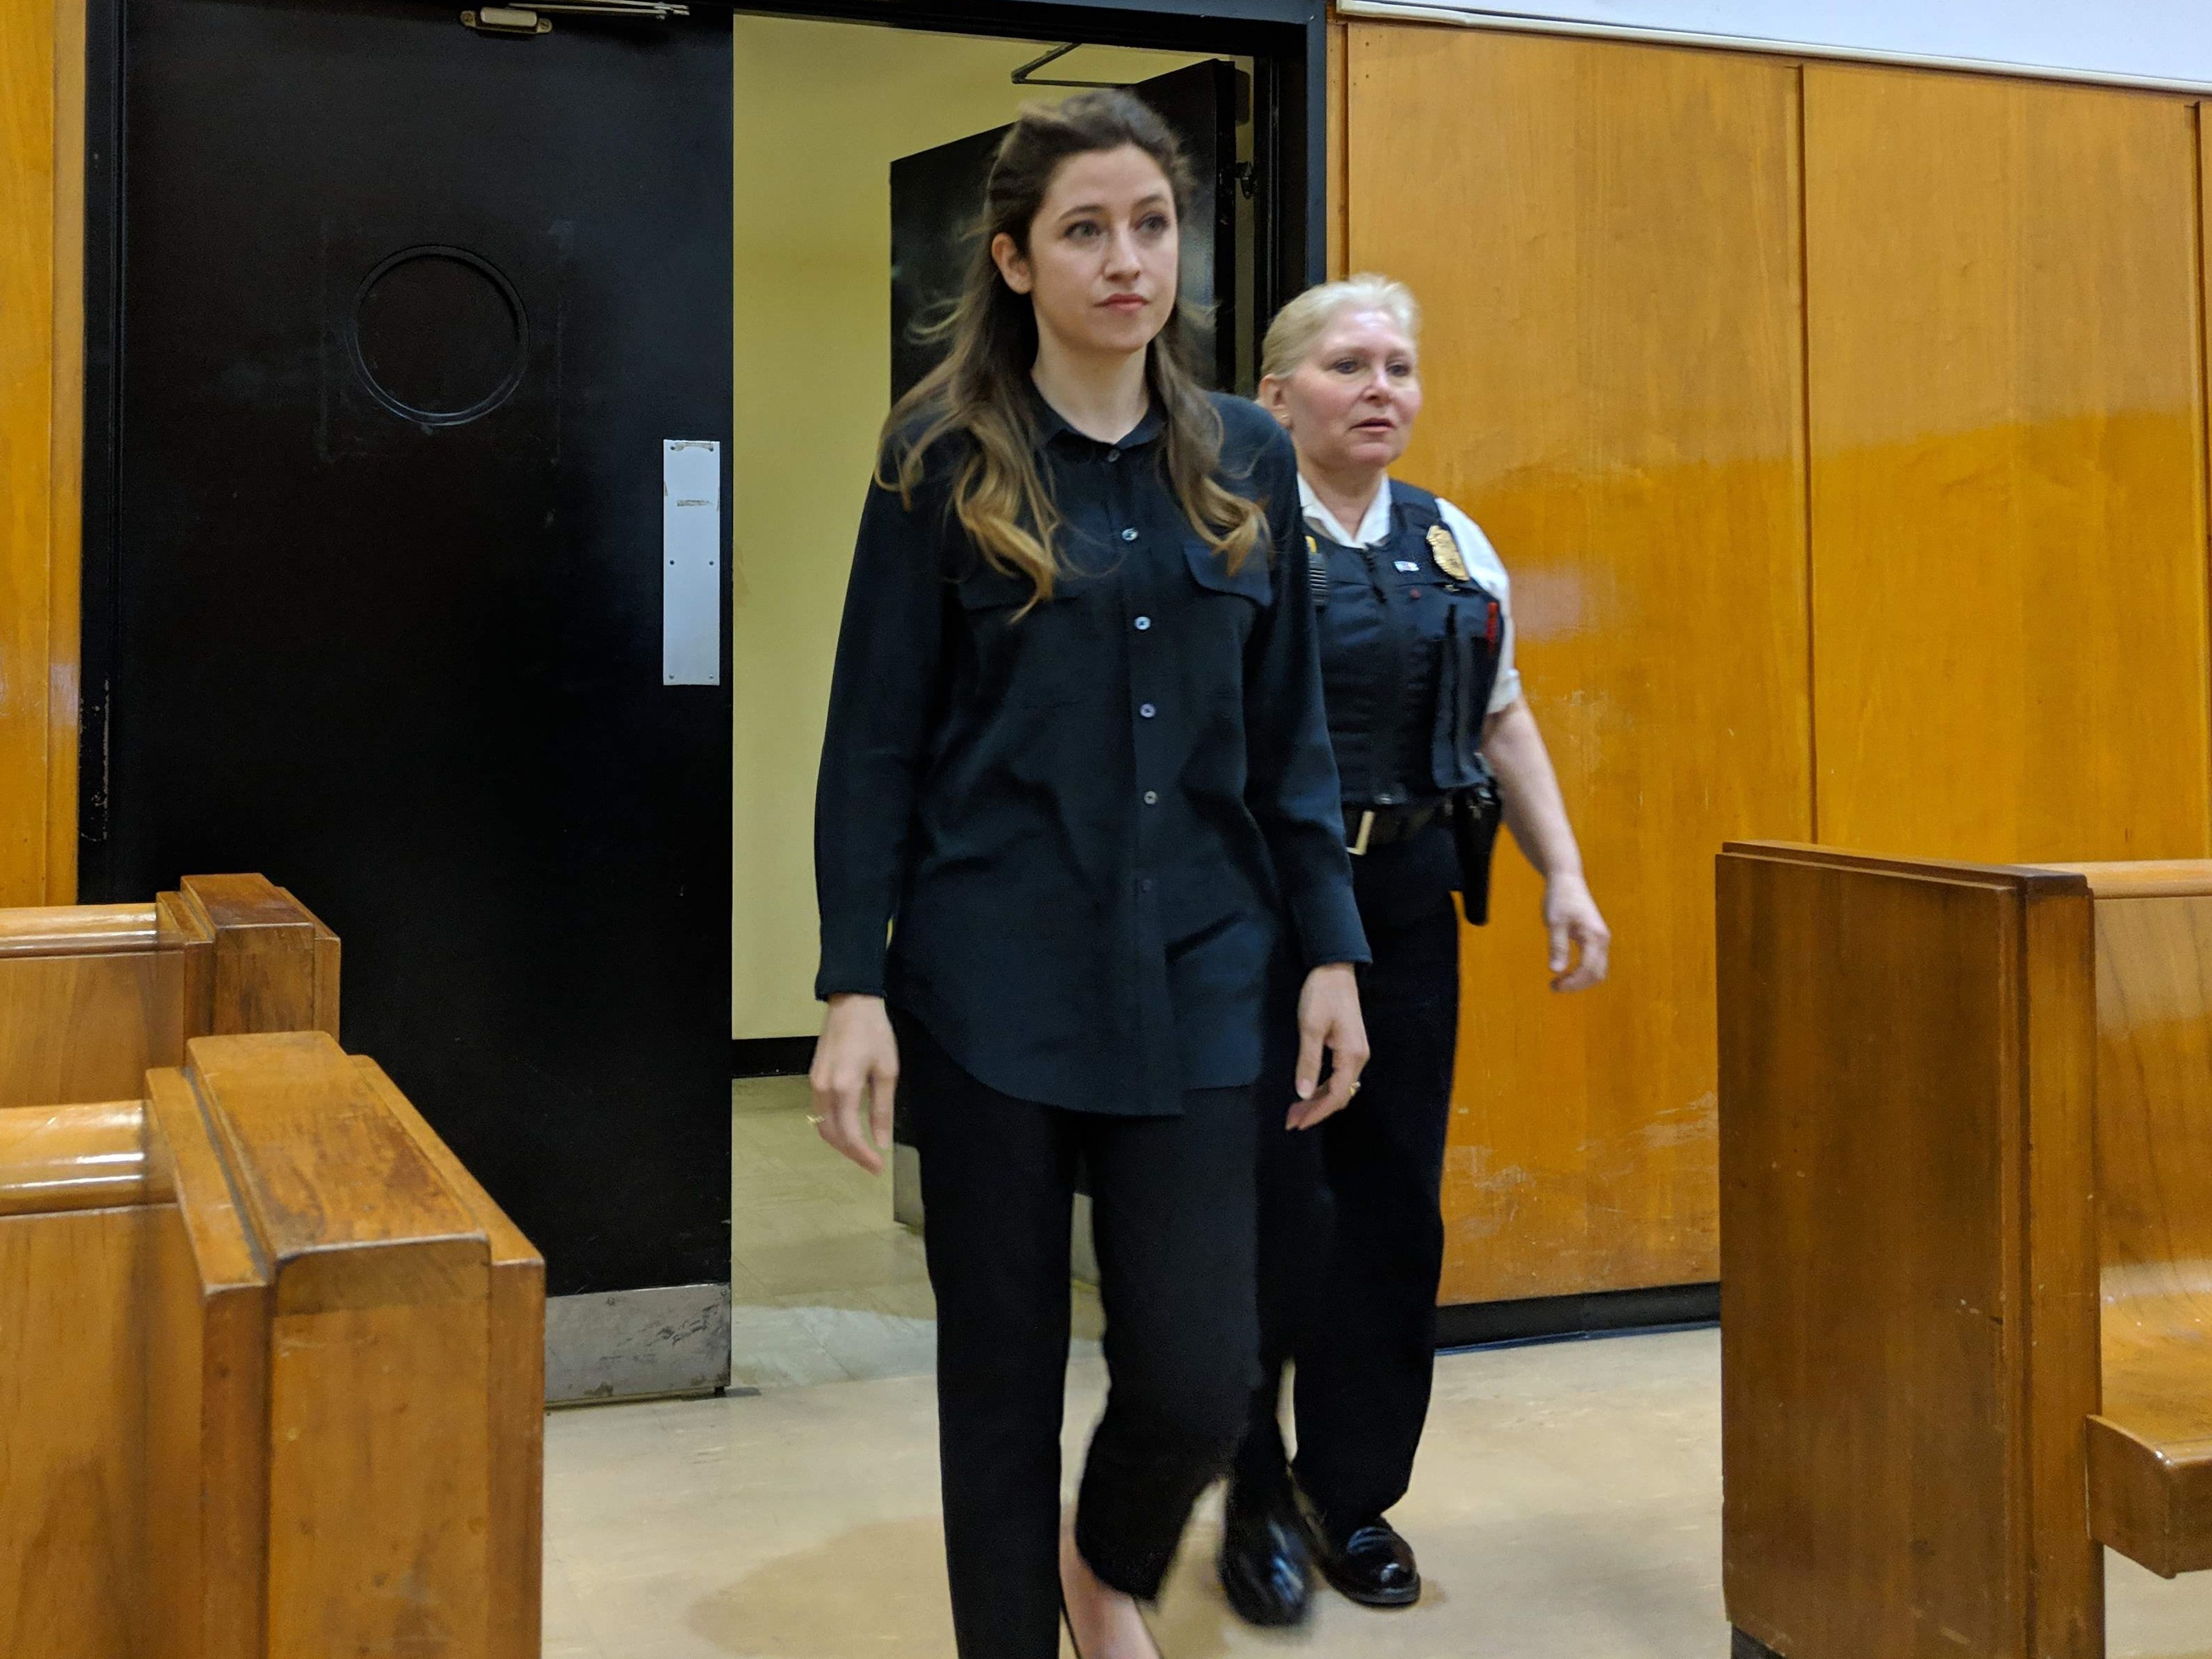 Rachel Williams entrando en la sala del juicio penal de Sorokin.